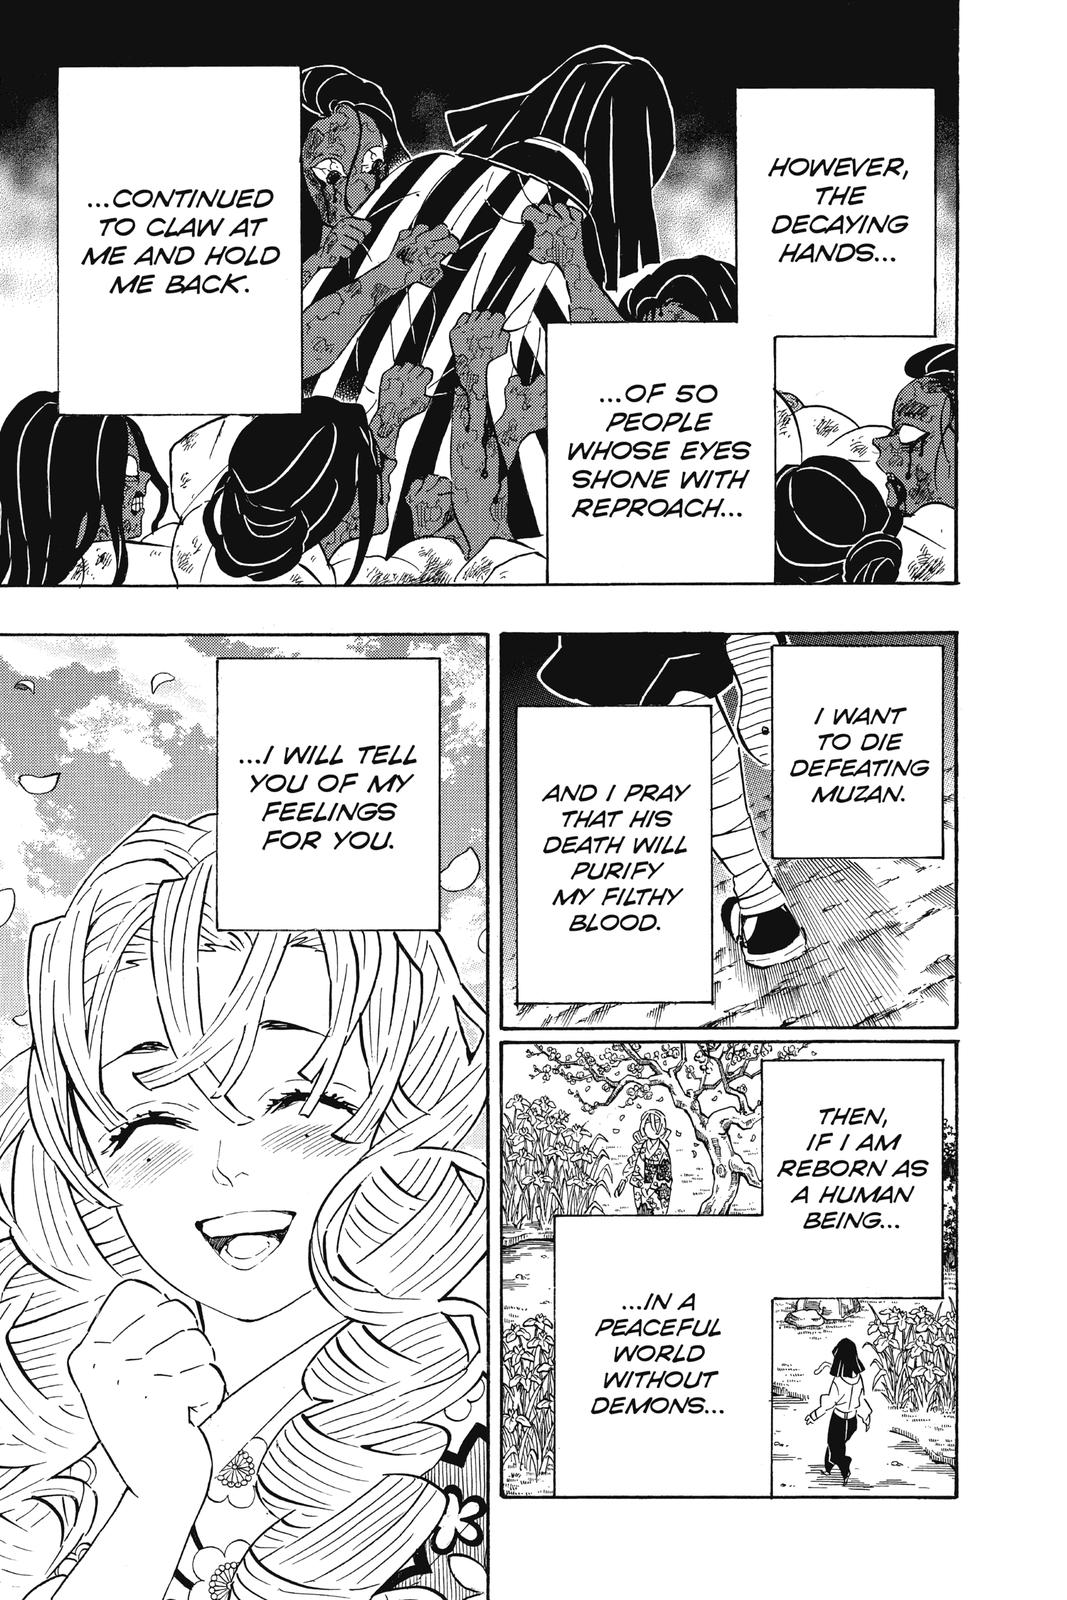 Demon Slayer Manga Manga Chapter - 188 - image 24